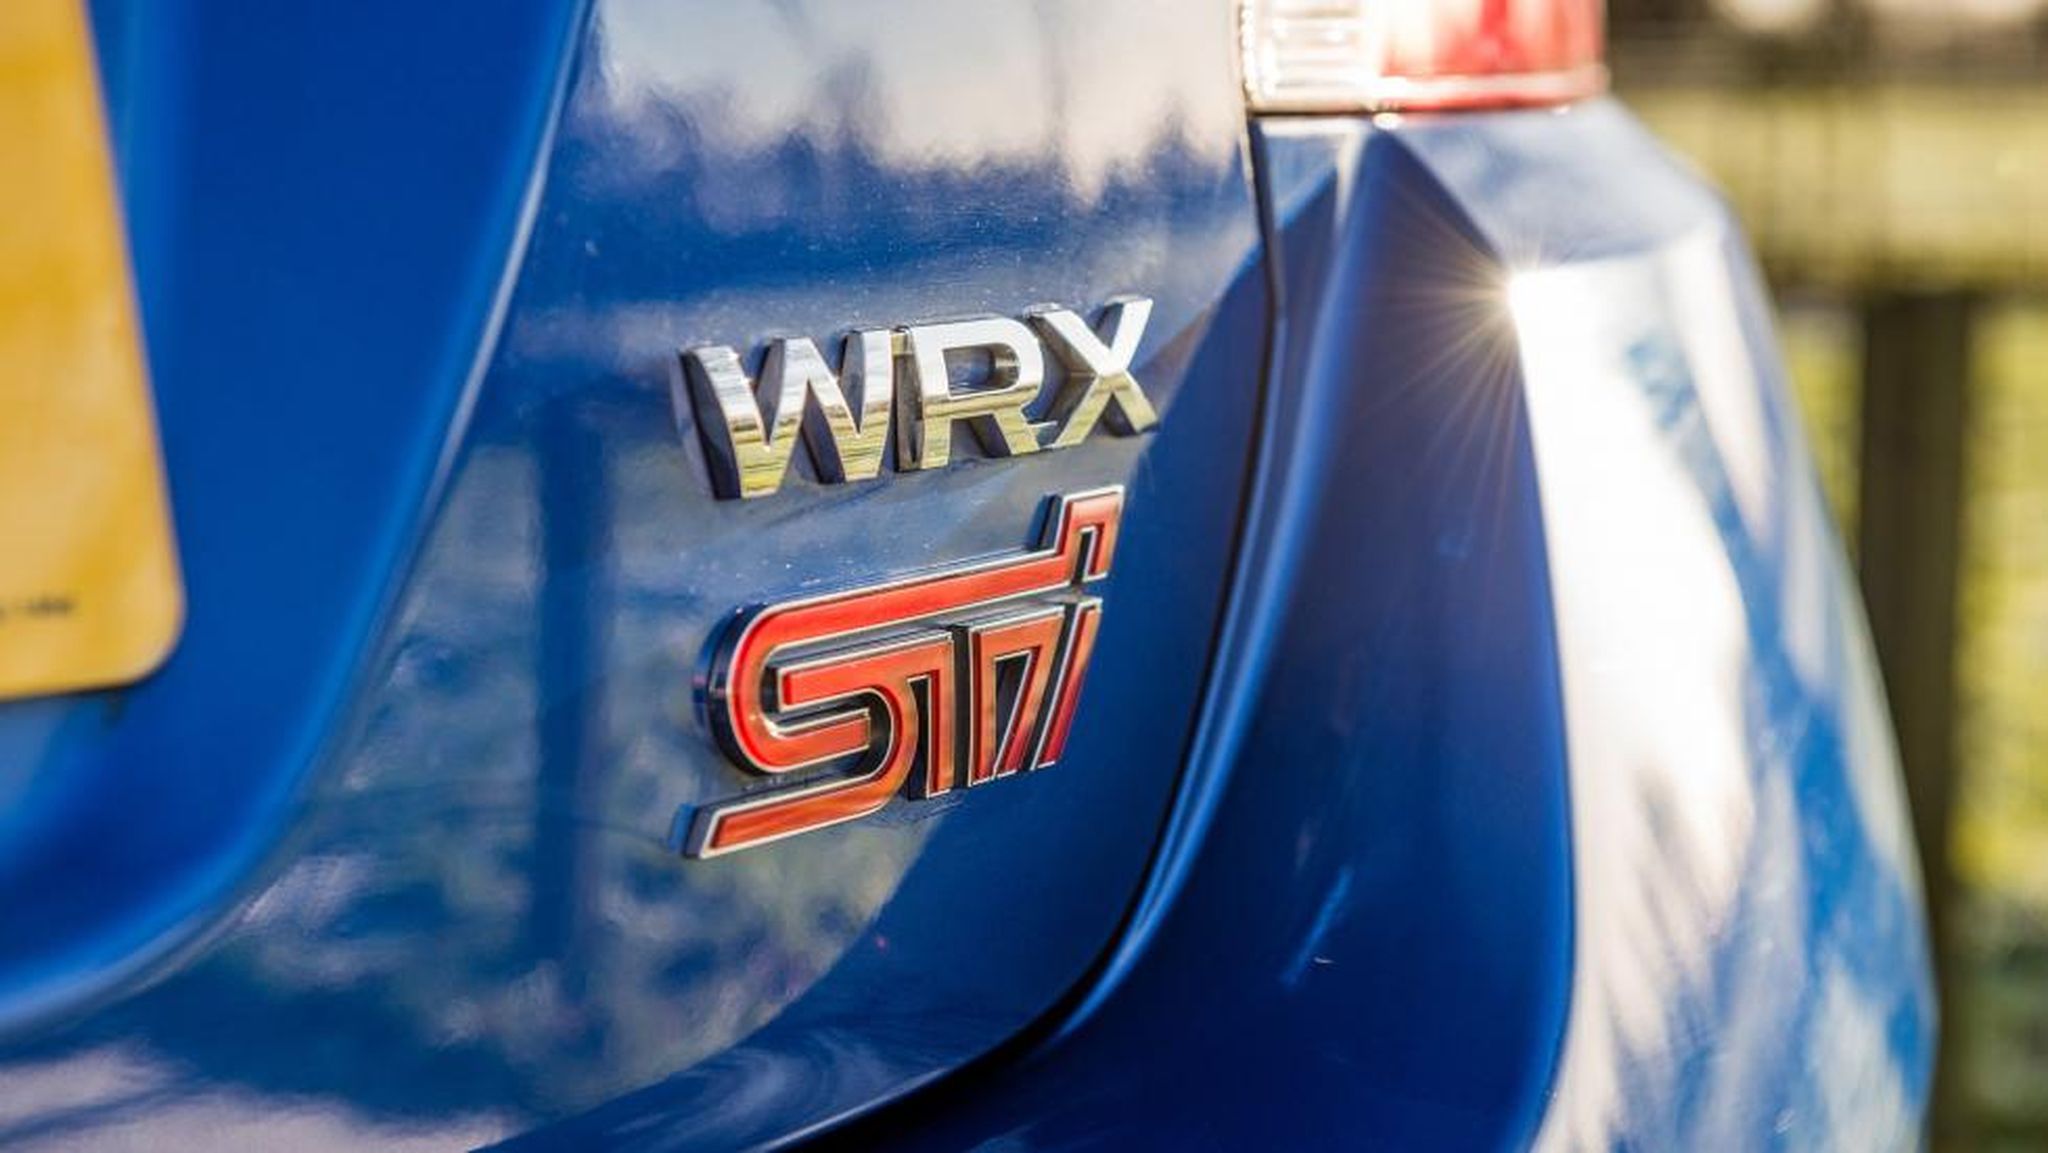 Comparativa Subaru WRX STI vs Impreza Turbo. Interiores